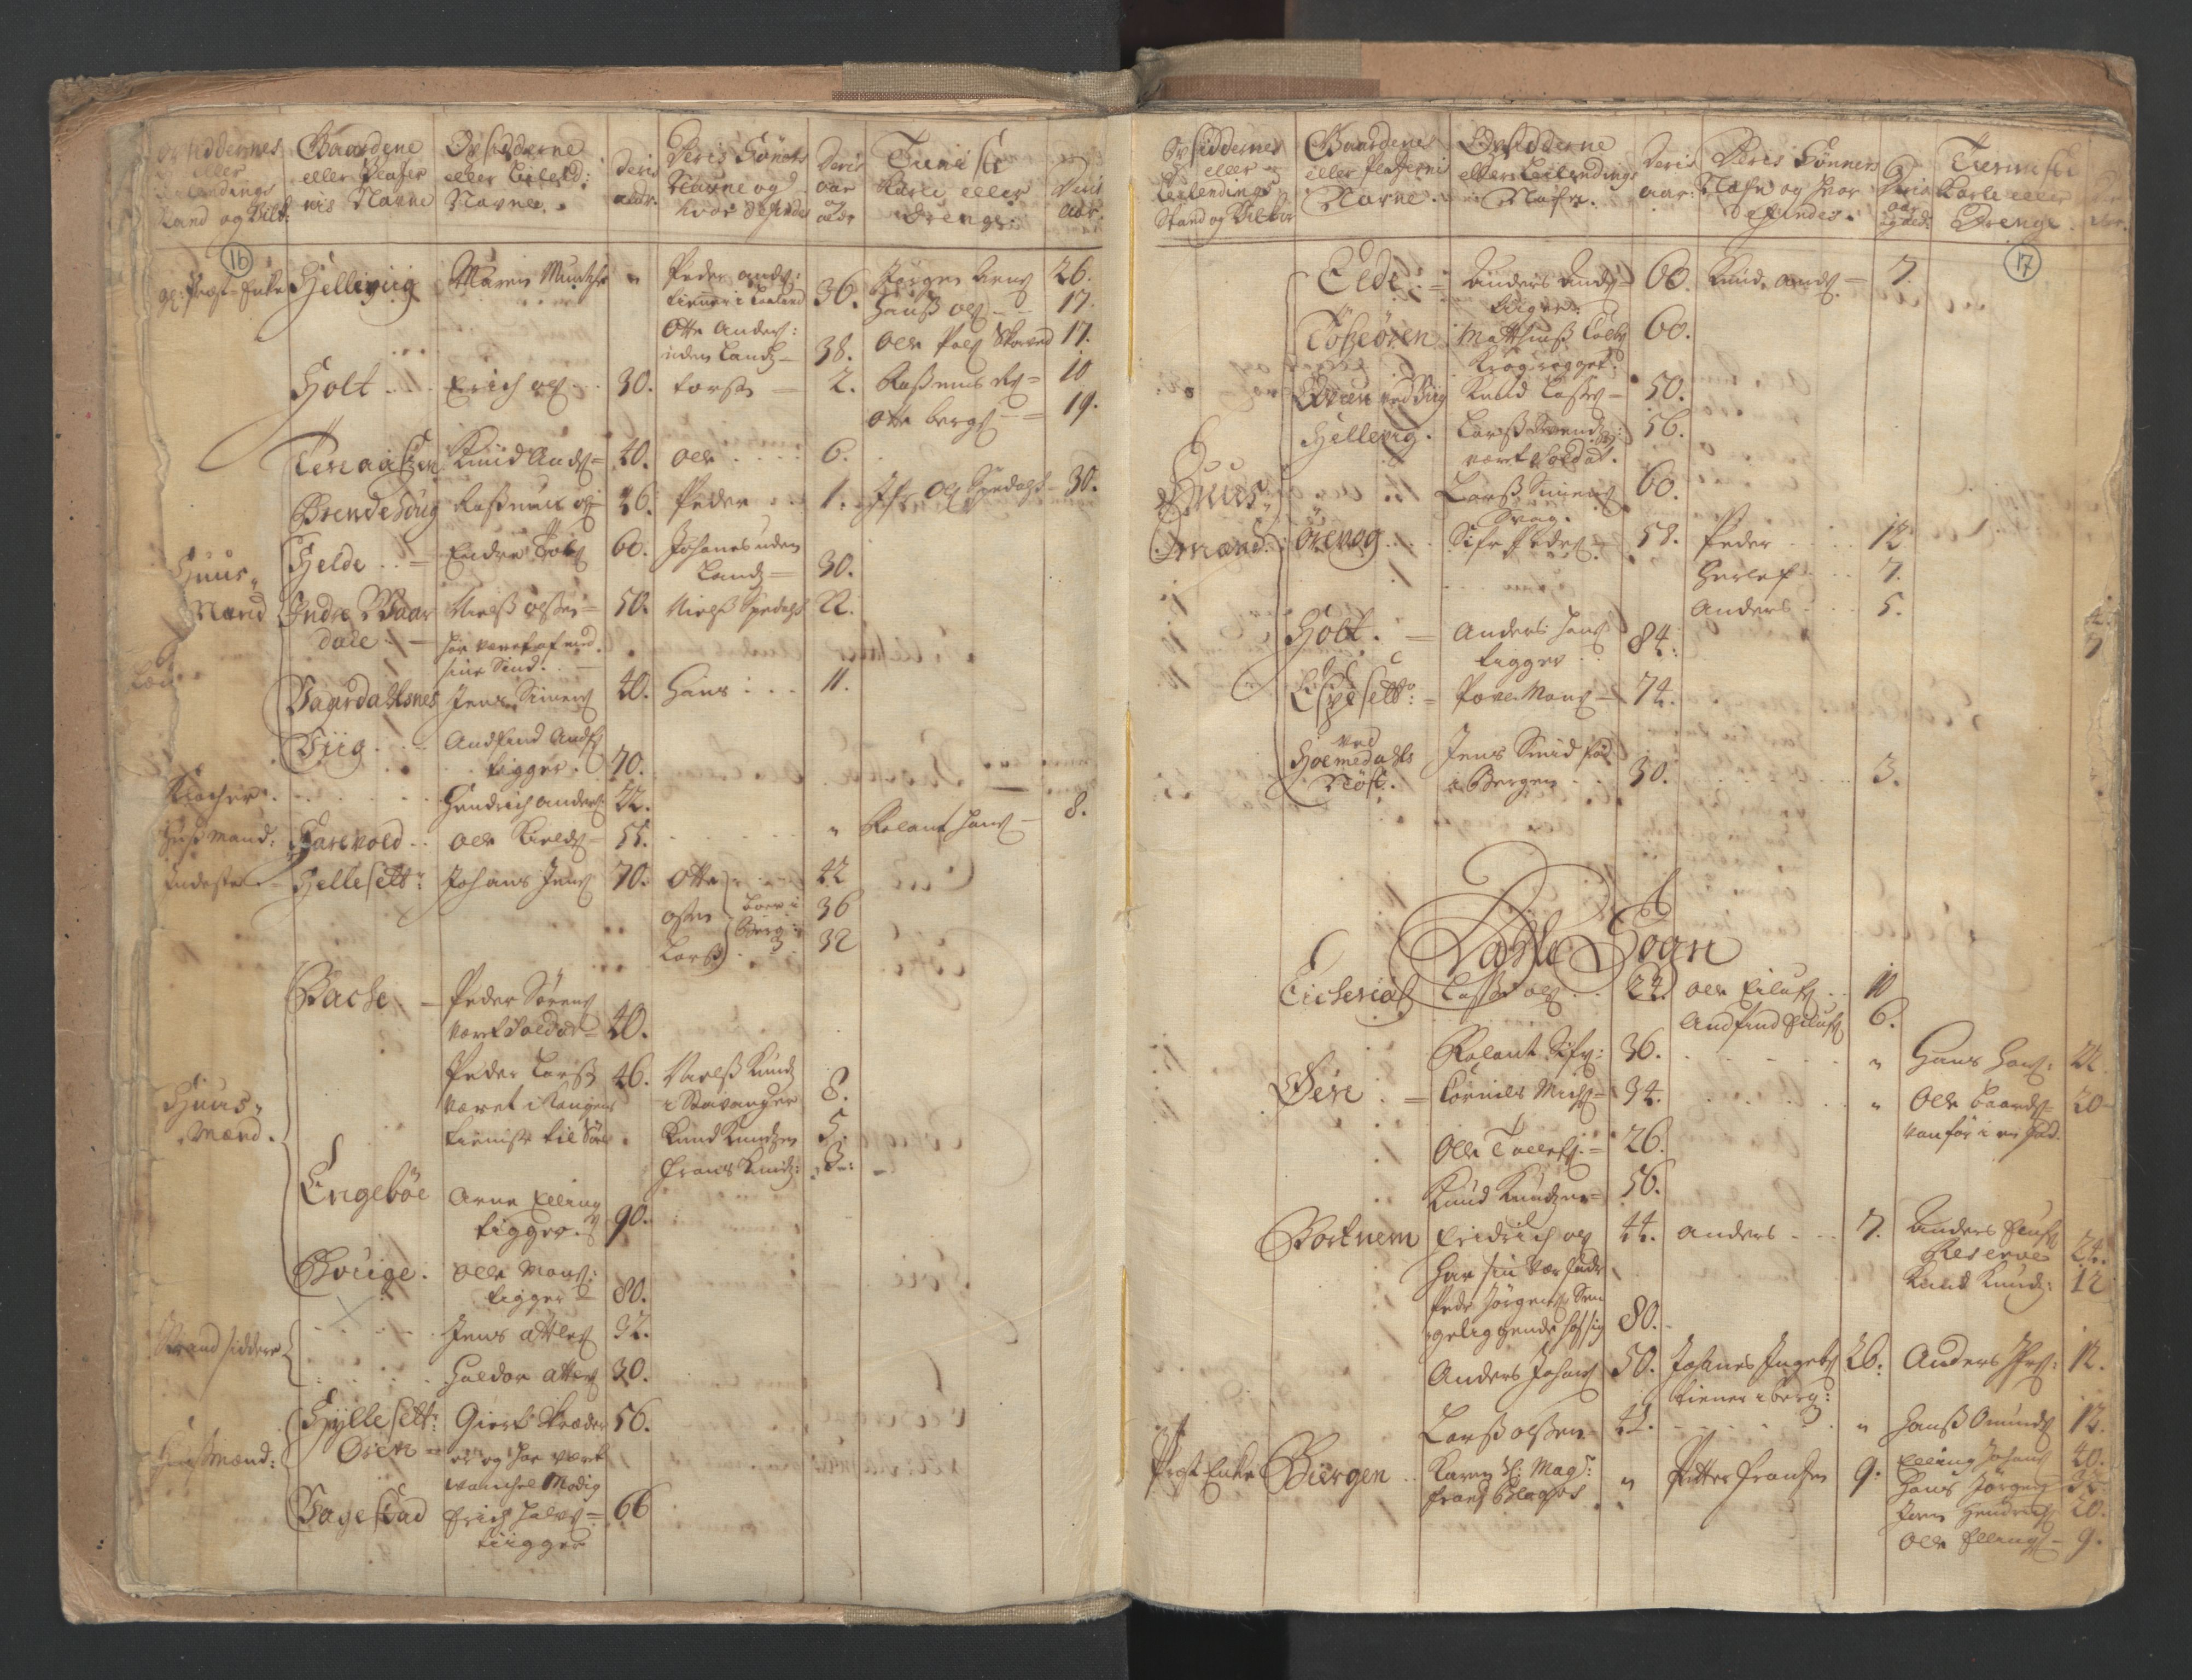 RA, Census (manntall) 1701, no. 9: Sunnfjord fogderi, Nordfjord fogderi and Svanø birk, 1701, p. 16-17